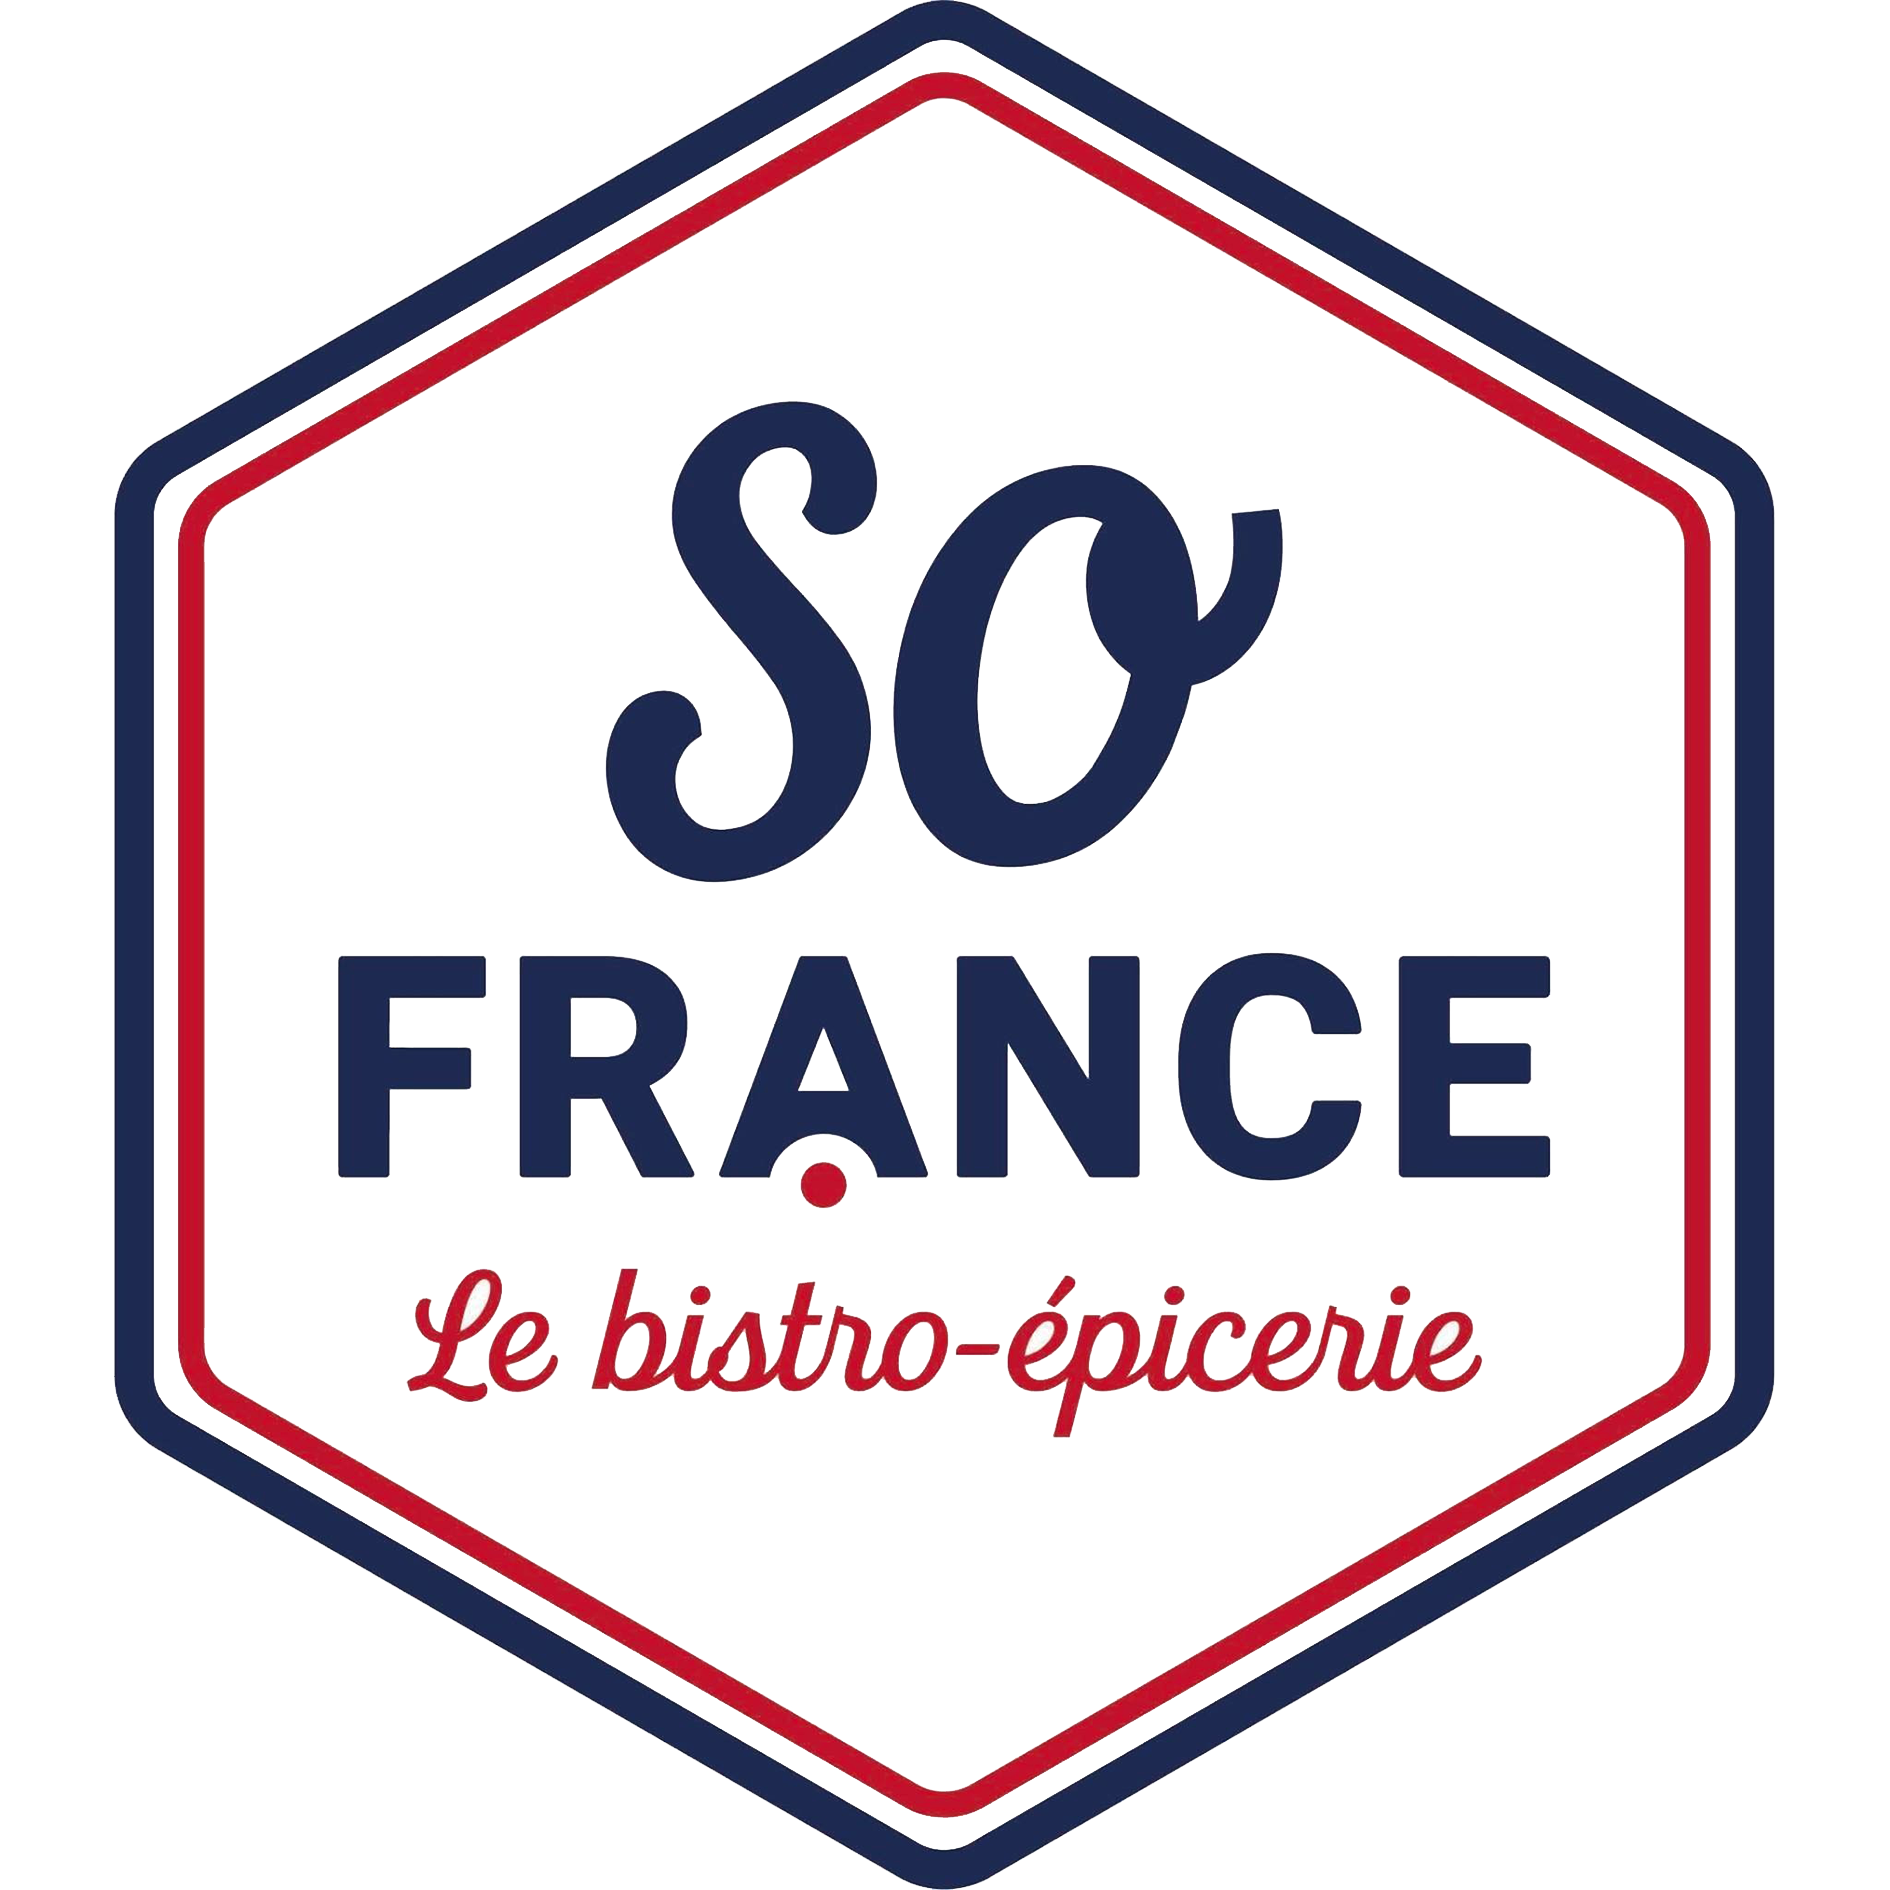 Sofrance-logo-sochic